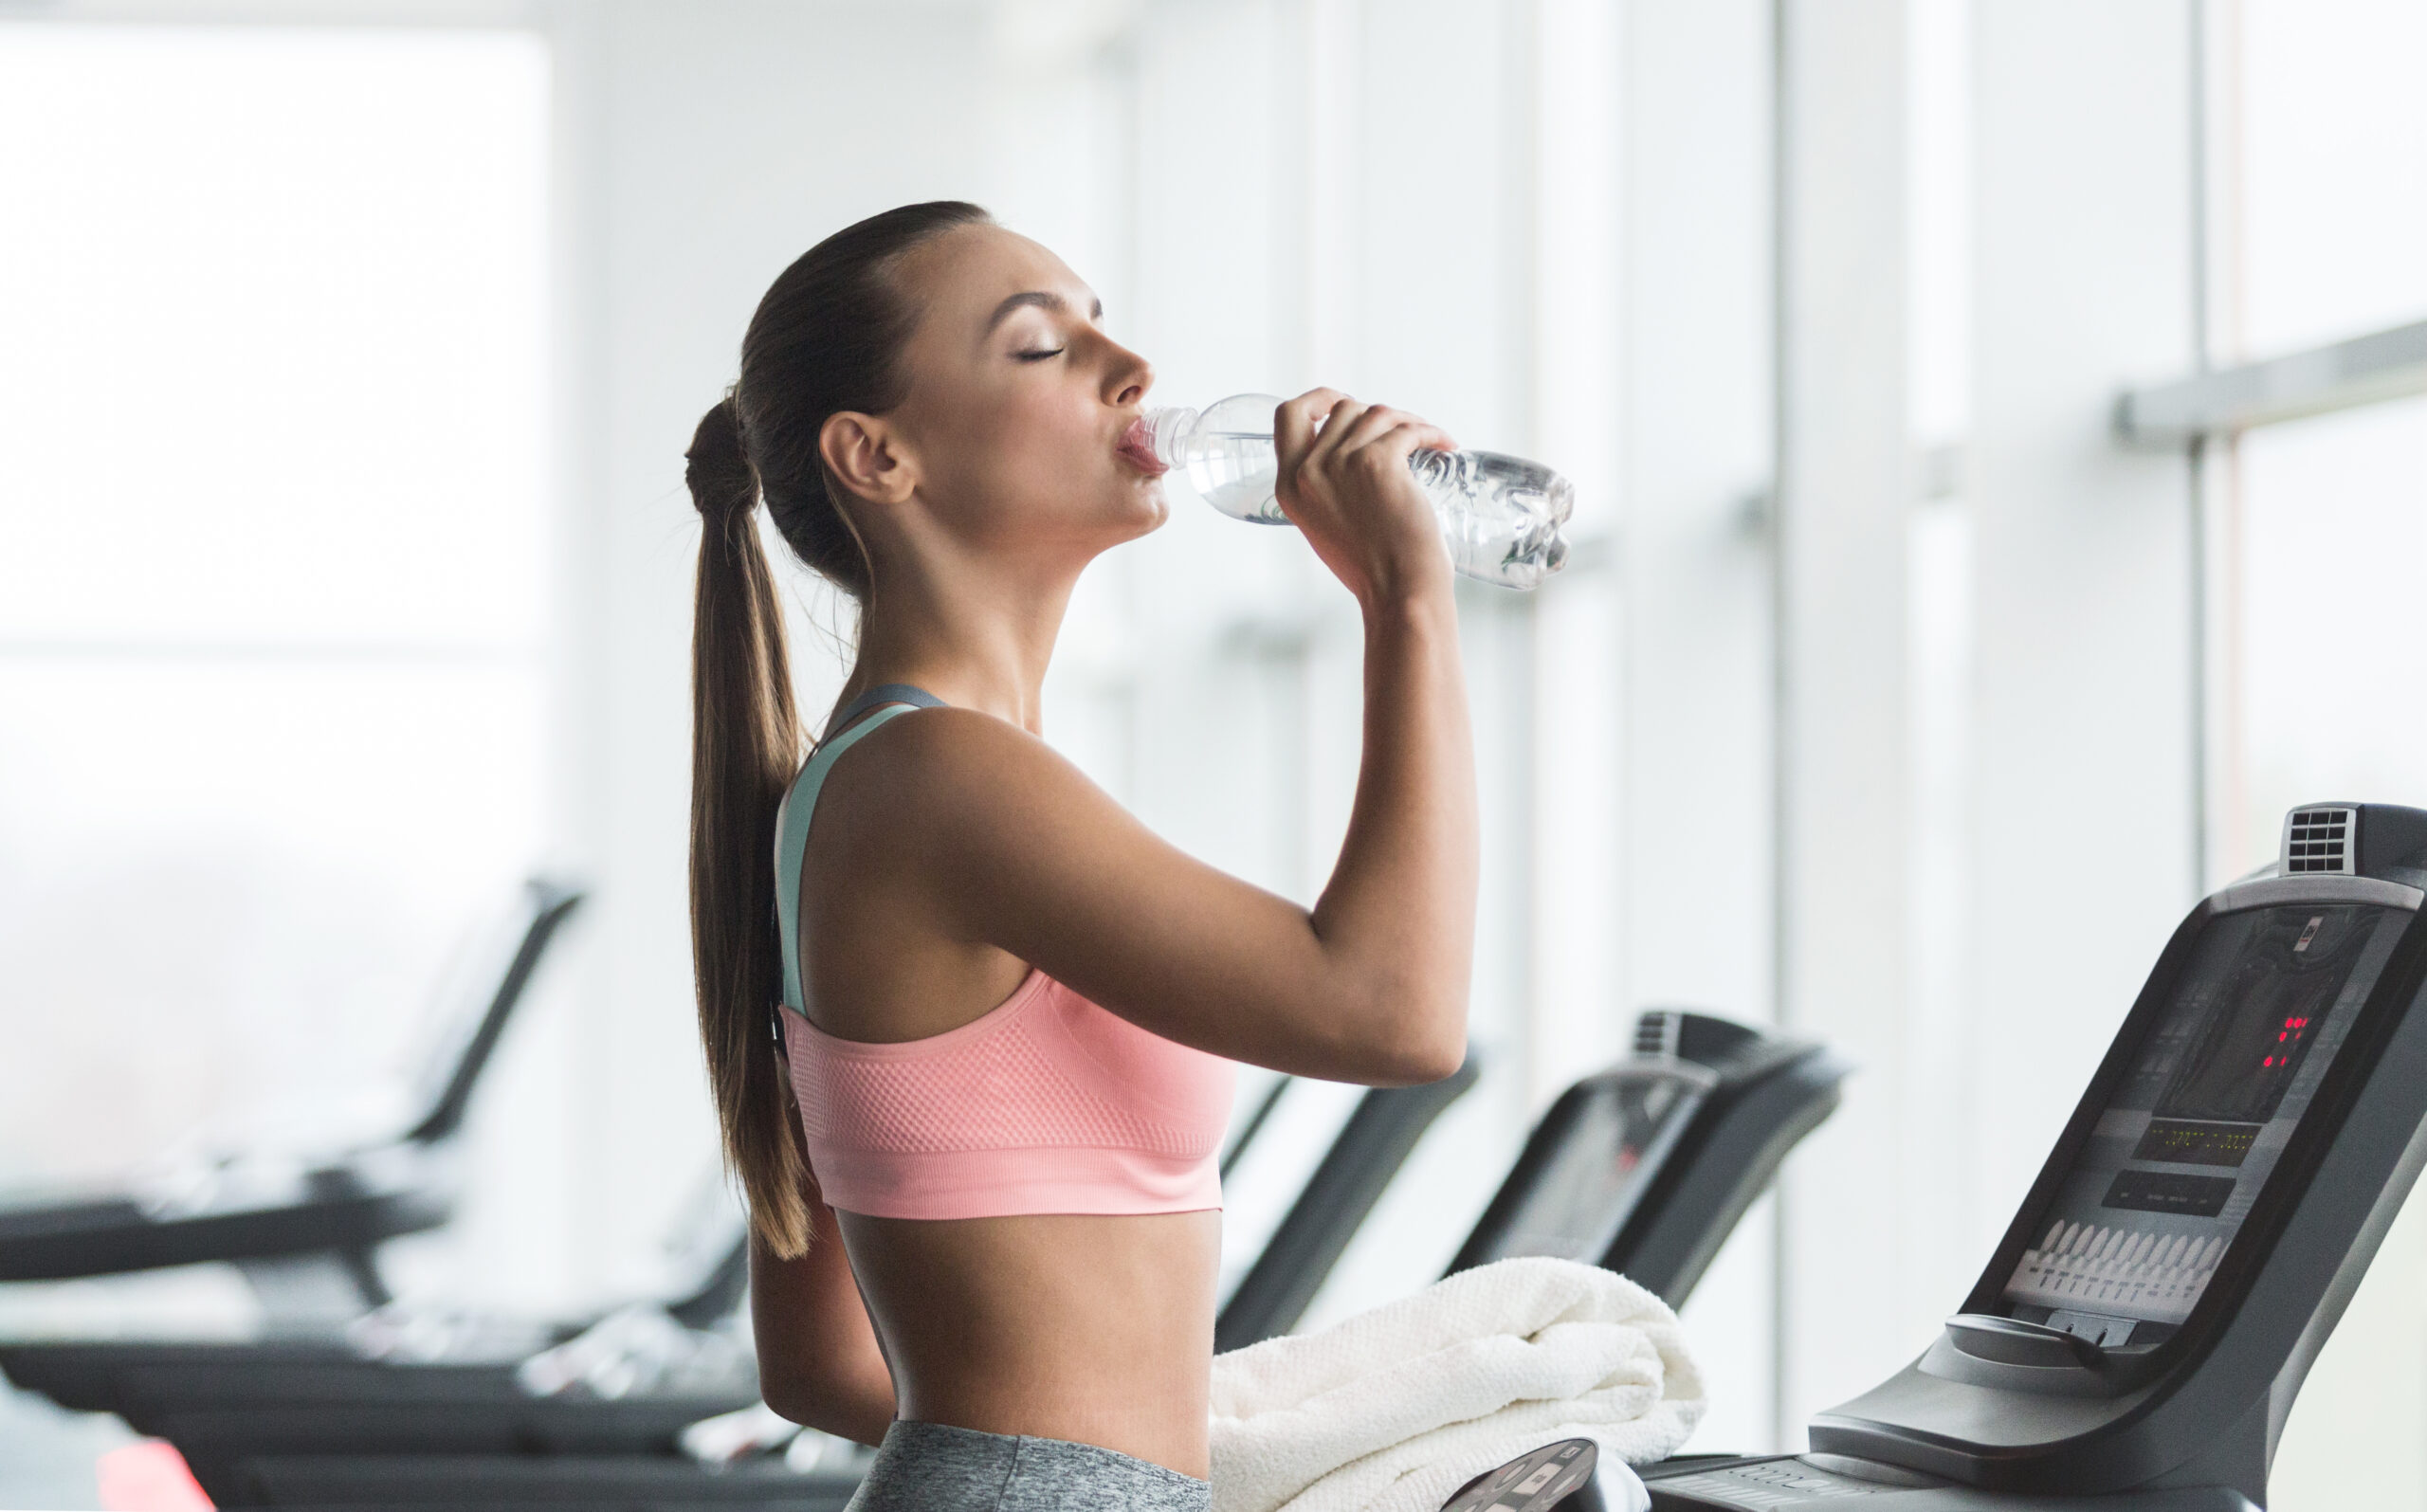 Tuturor sportivilor le este recomandat să consume apă înainte, în timpul și după antrenament